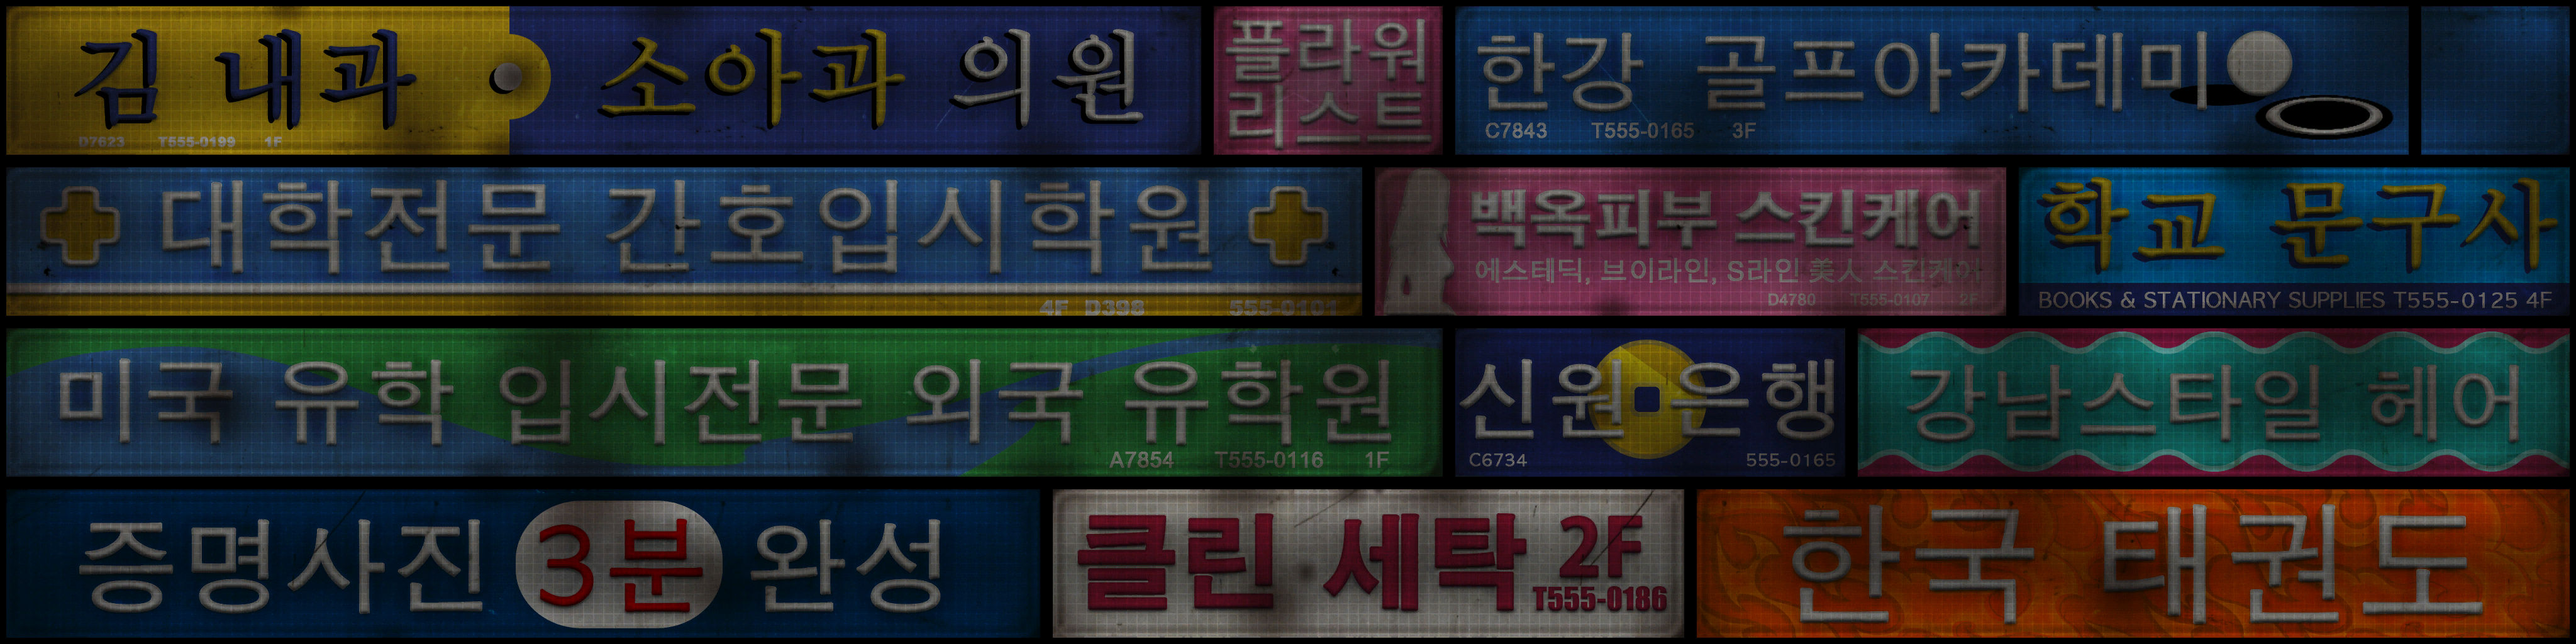 수정됨_seo_signs_business_05_col.jpg